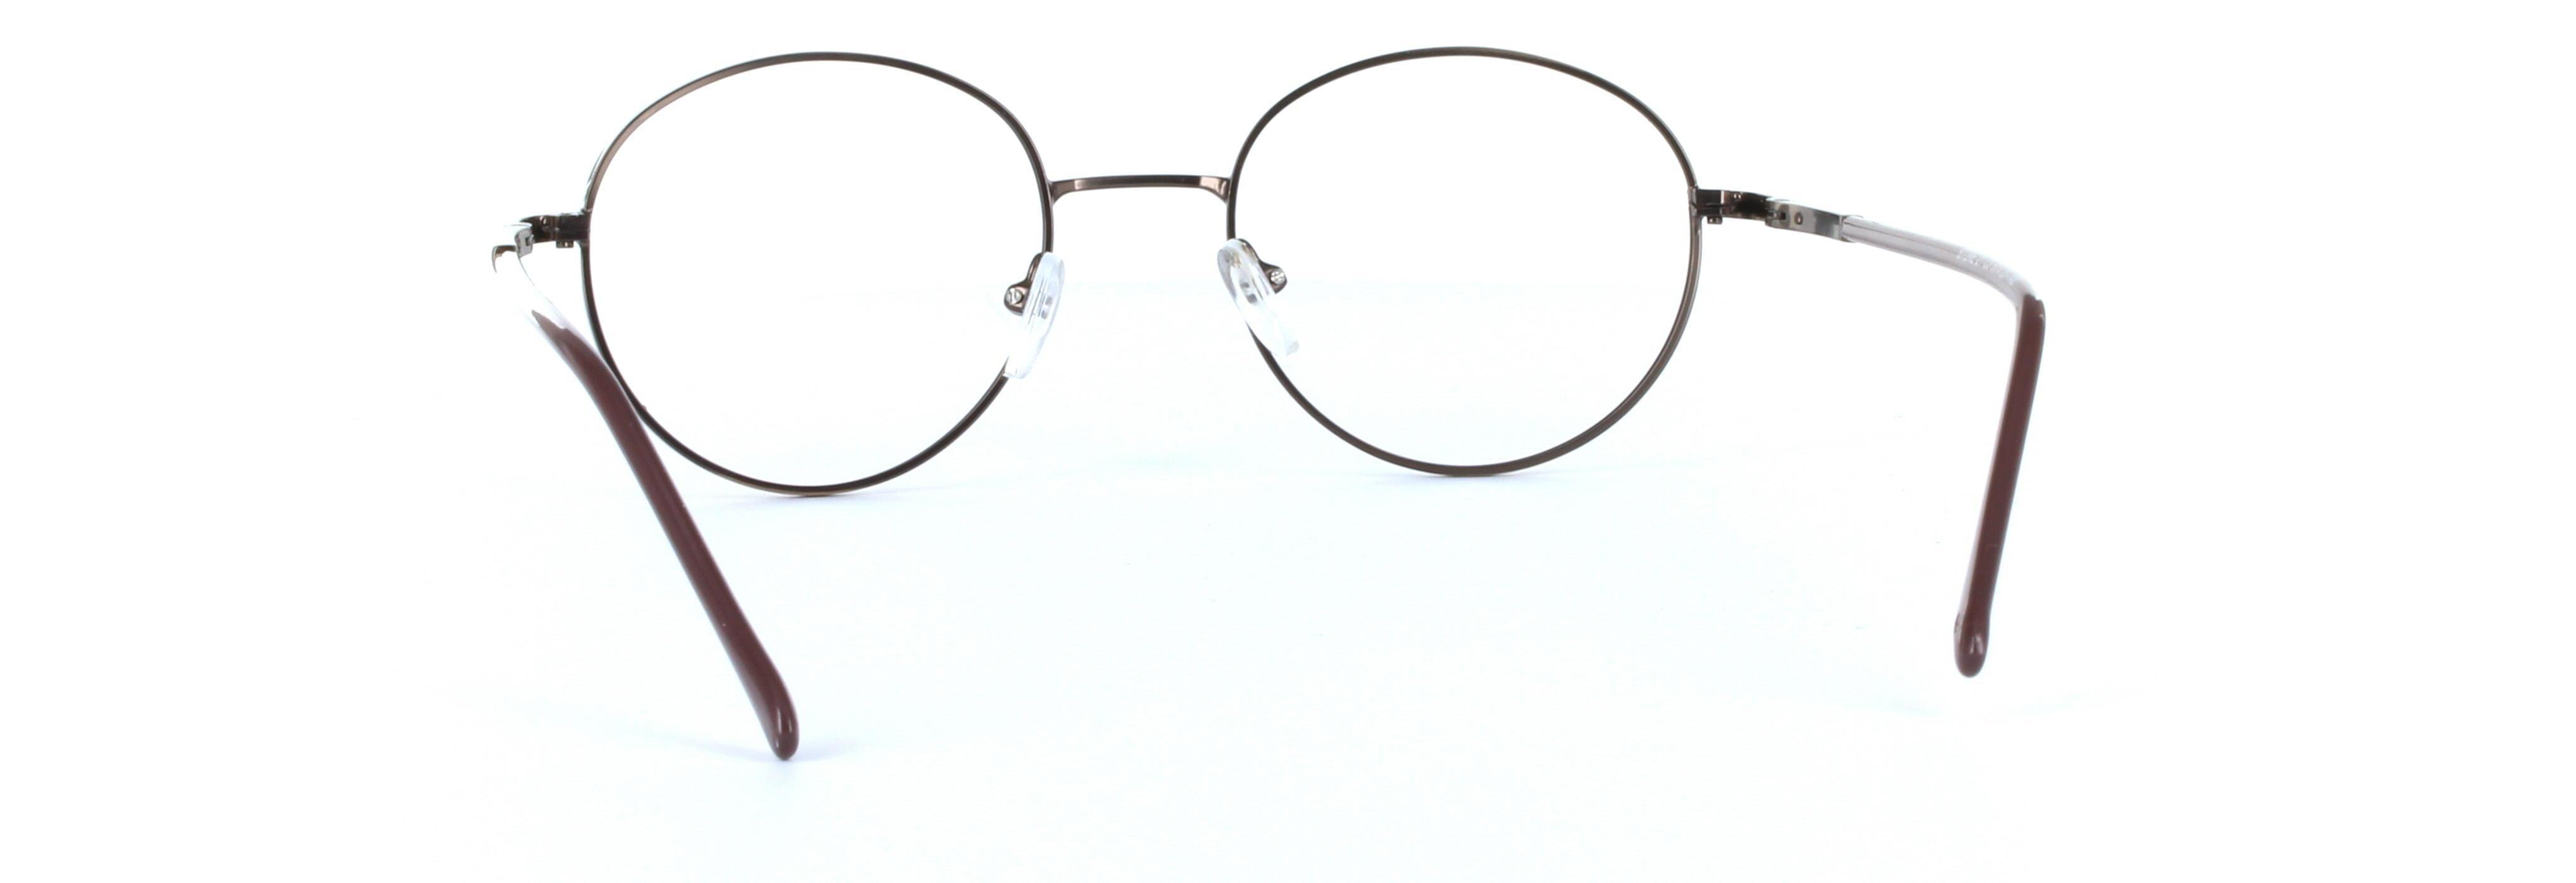 Discus Brown Full Rim Round Metal Glasses - Image View 3